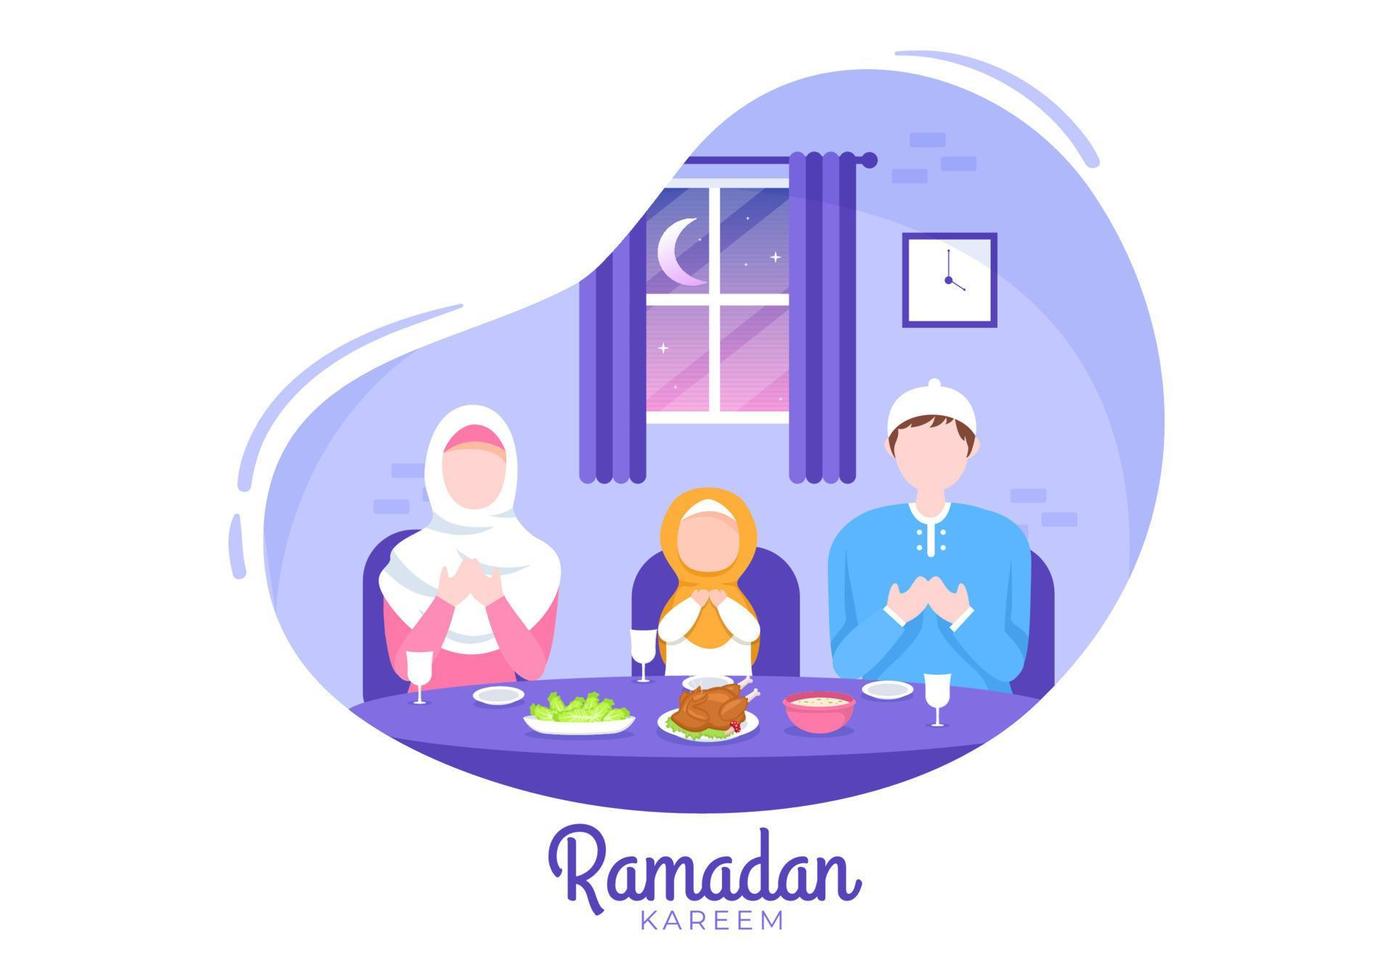 ramadan kareem mit dem brechen des fastens, iftar oder sahur in flacher hintergrundvektorillustration für religiöse feiertage islamische eid fitr und adha festival banner oder poster vektor